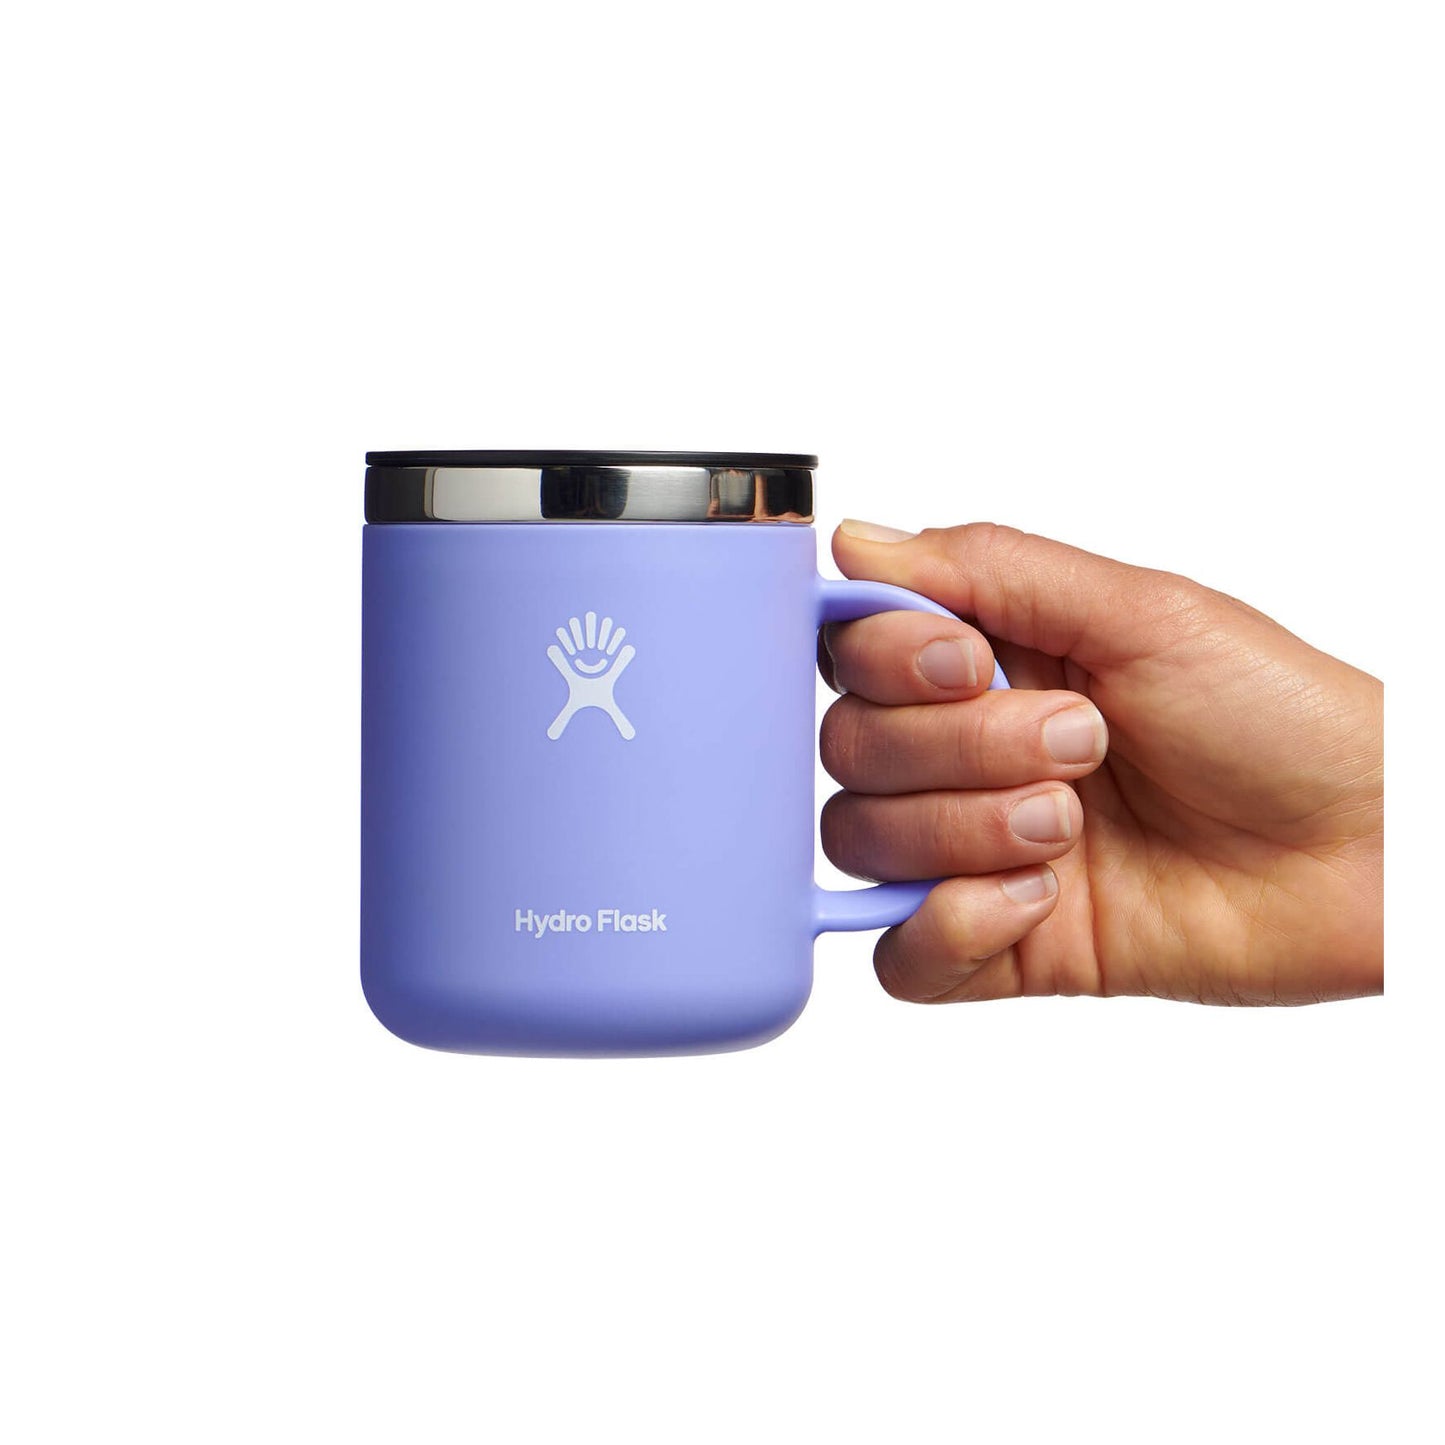 Hydro flask 12 oz Coffee Mug Snapper 